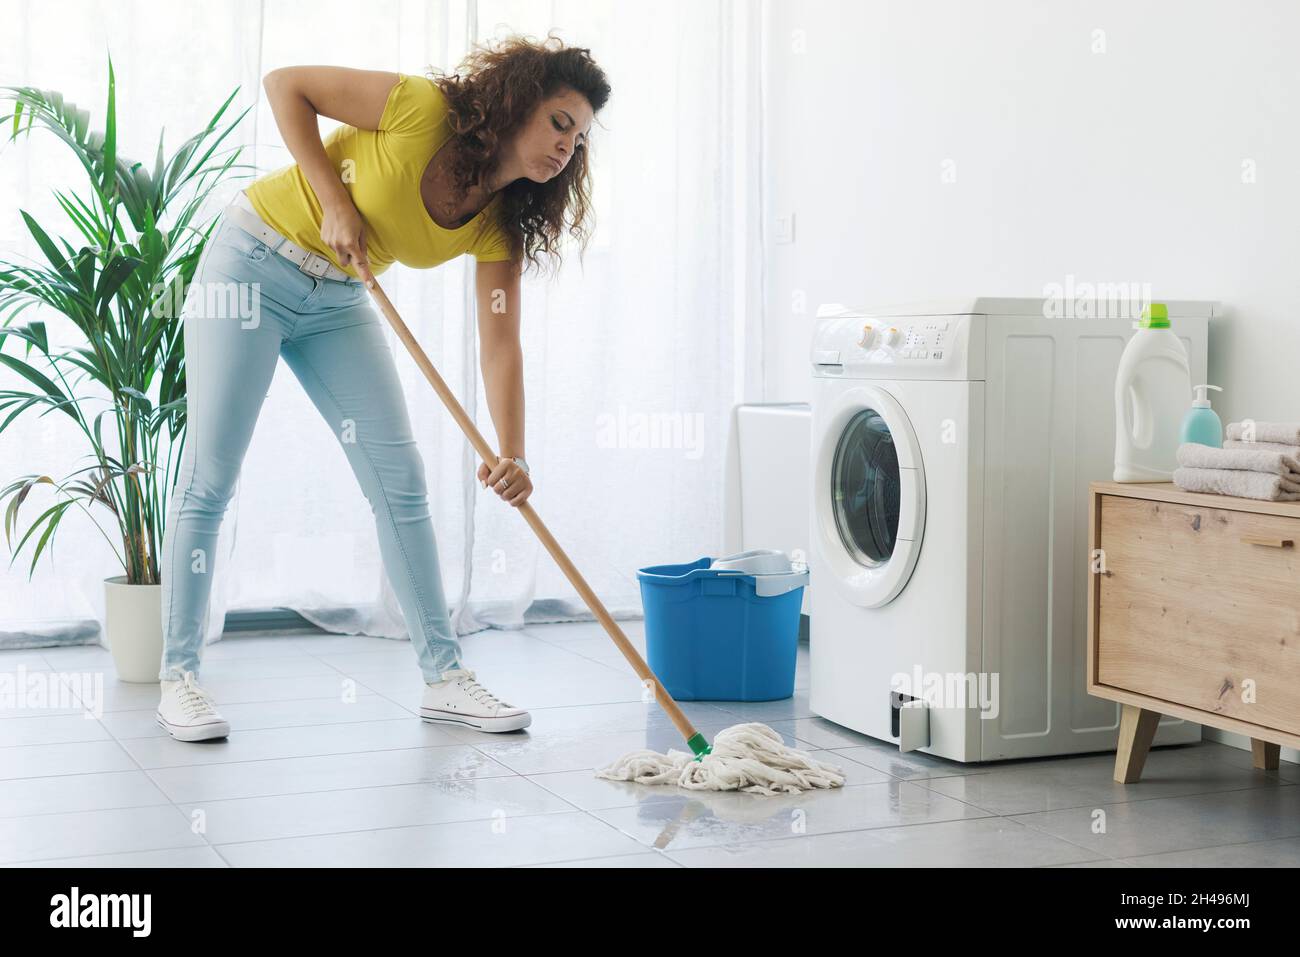 Kaputte Waschmaschine, die Wasser auf den Boden tropfte und enttäuschte die  Frau, die mit einem Wischmopp reinigte Stockfotografie - Alamy